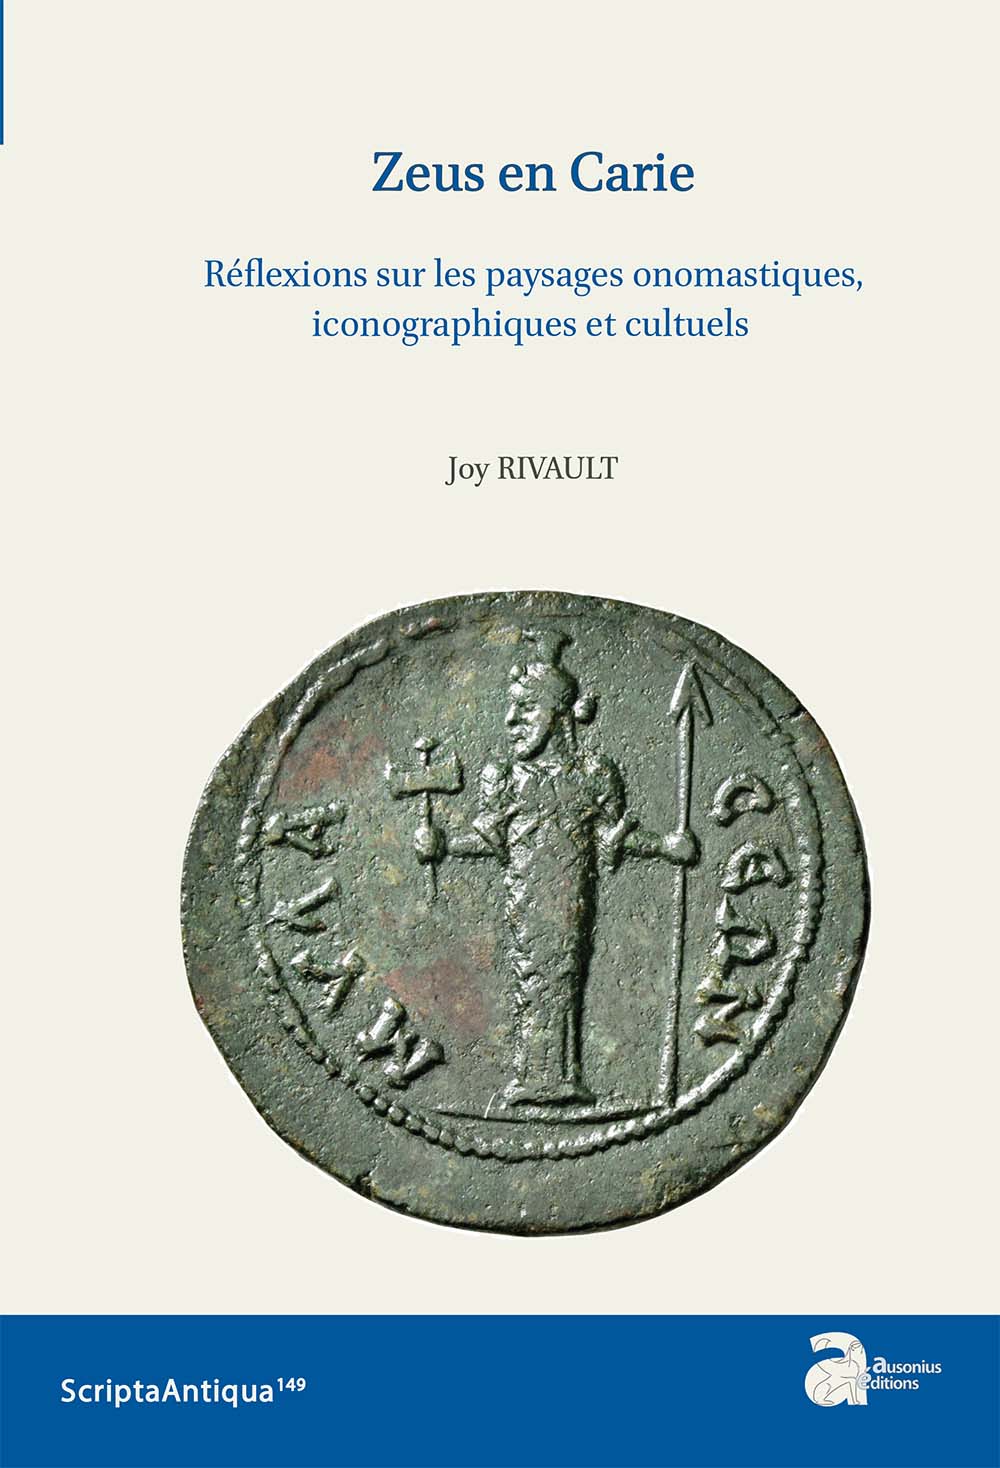 Zeus en Carie. Réflexions sur les paysages onomastiques, iconographiques et cultuels, (Scripta antiqua 149), 2021, 511 p.